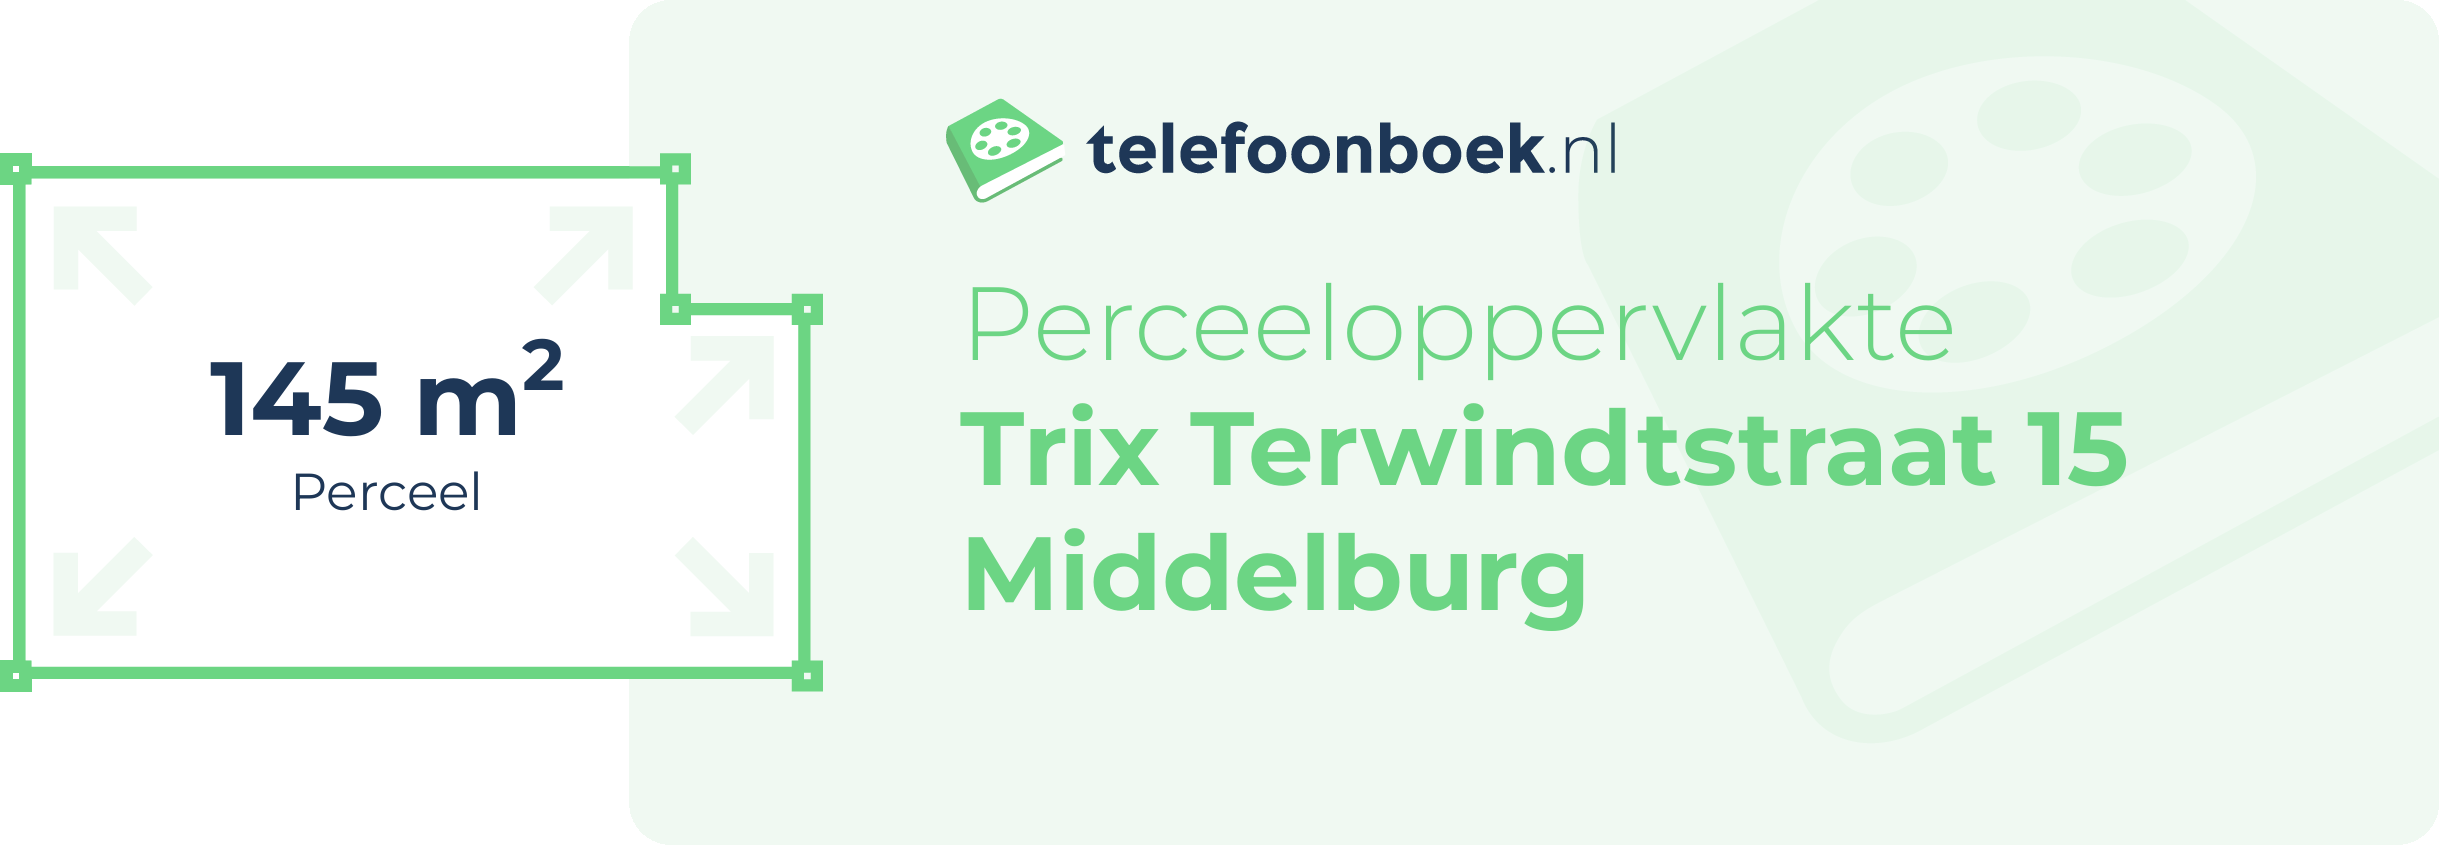 Perceeloppervlakte Trix Terwindtstraat 15 Middelburg